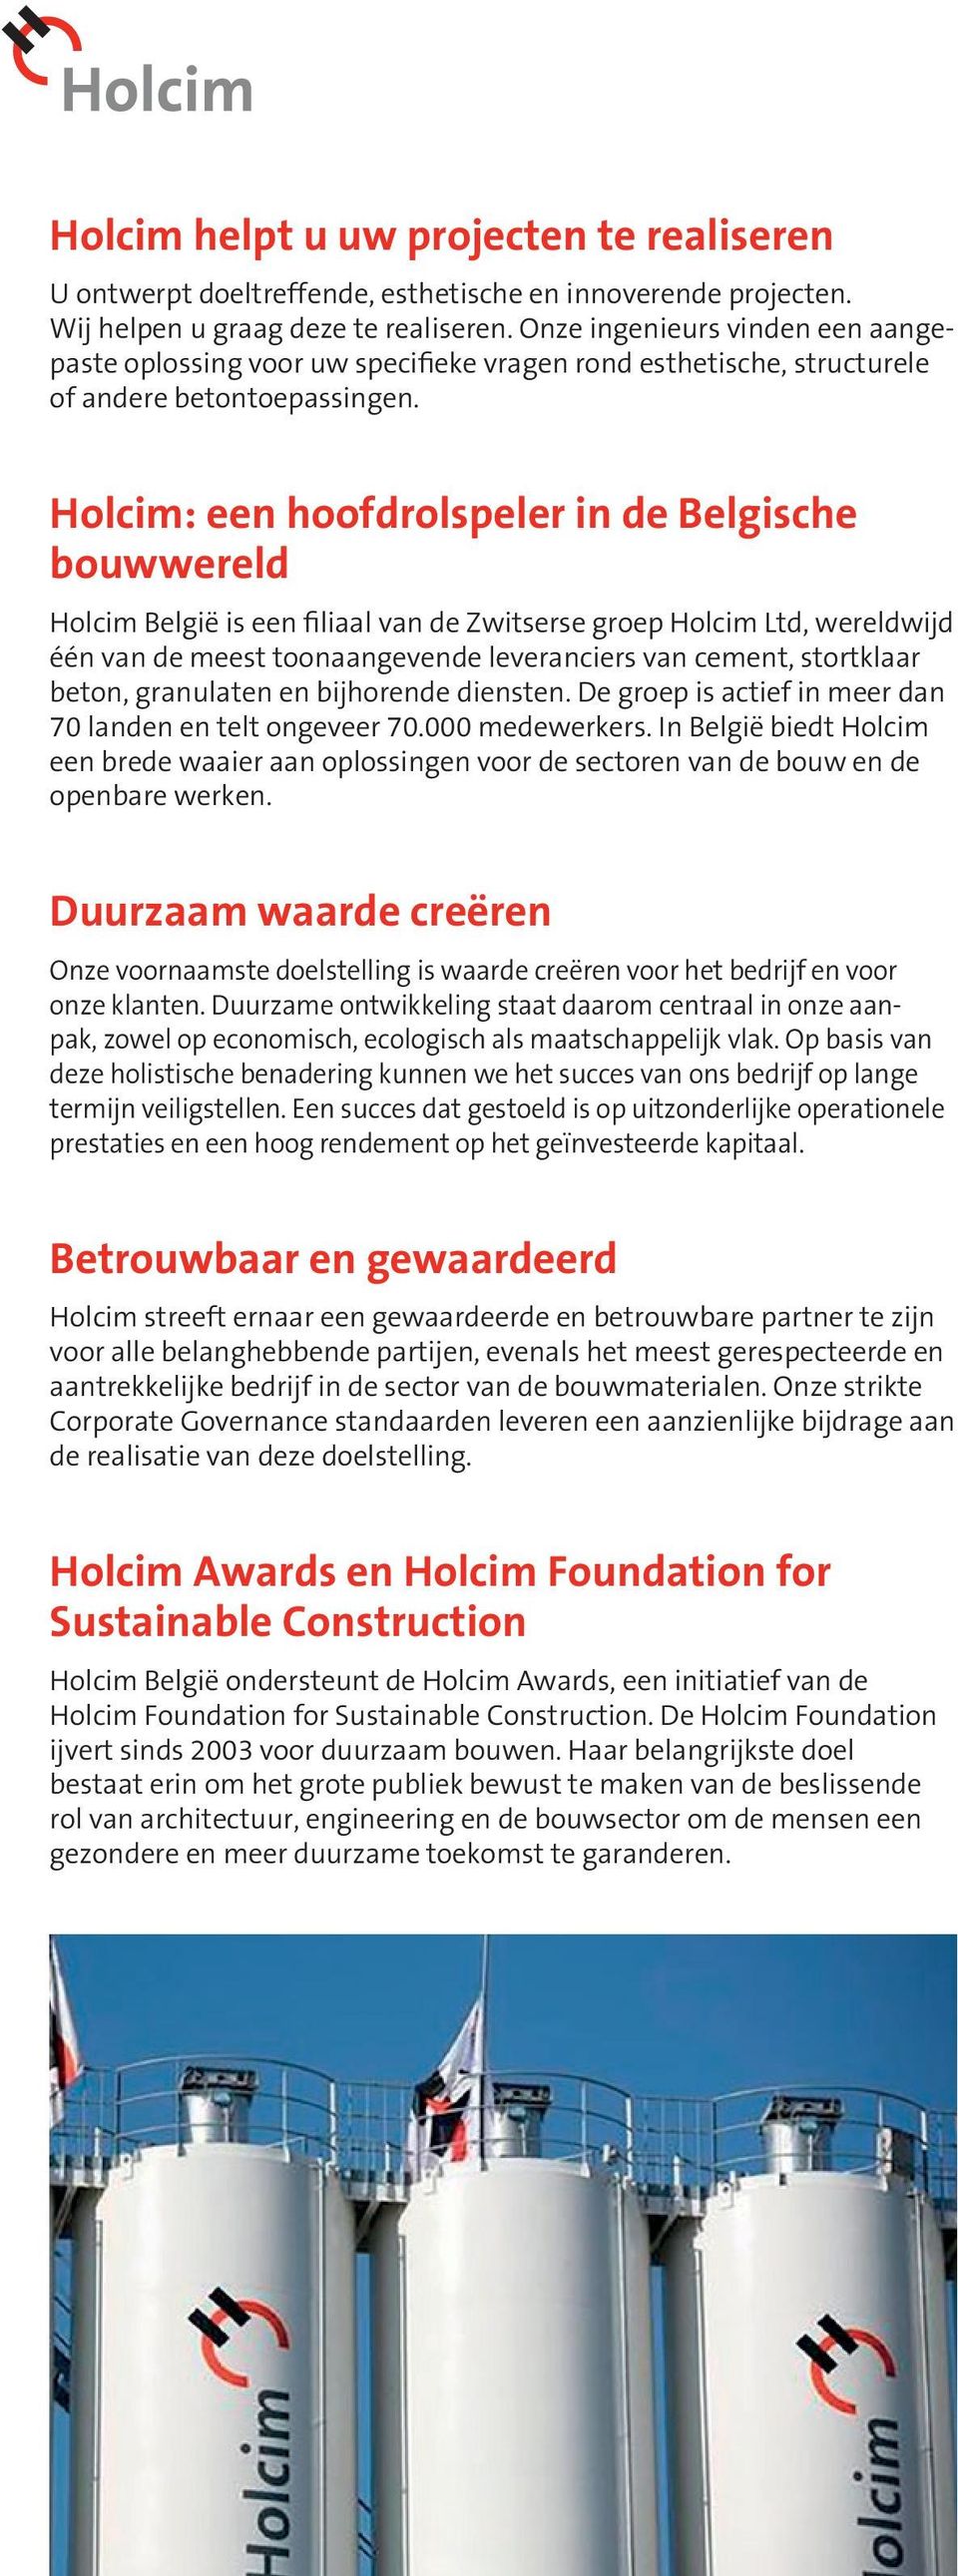 Holcim: een hoofdrolspeler in de Belgische bouwwereld Holcim België is een filiaal van de Zwitserse groep Holcim Ltd, wereldwijd één van de meest toonaangevende leveranciers van cement, stortklaar